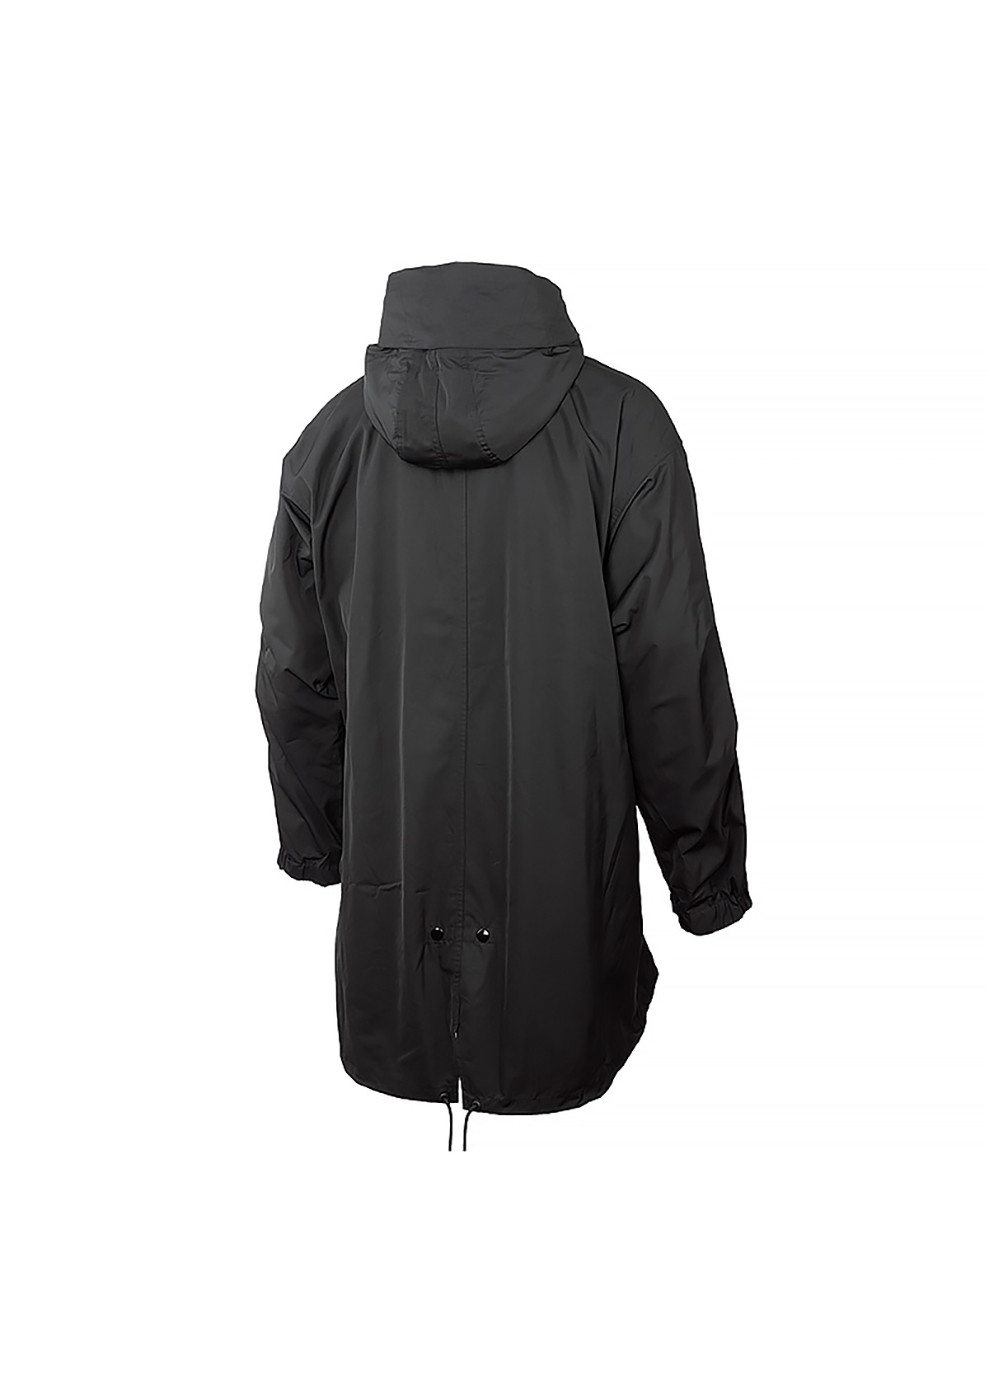 Черная демисезонная мужская куртка m nl tf 3in1 parka черный s (dq4926-010 s) Nike